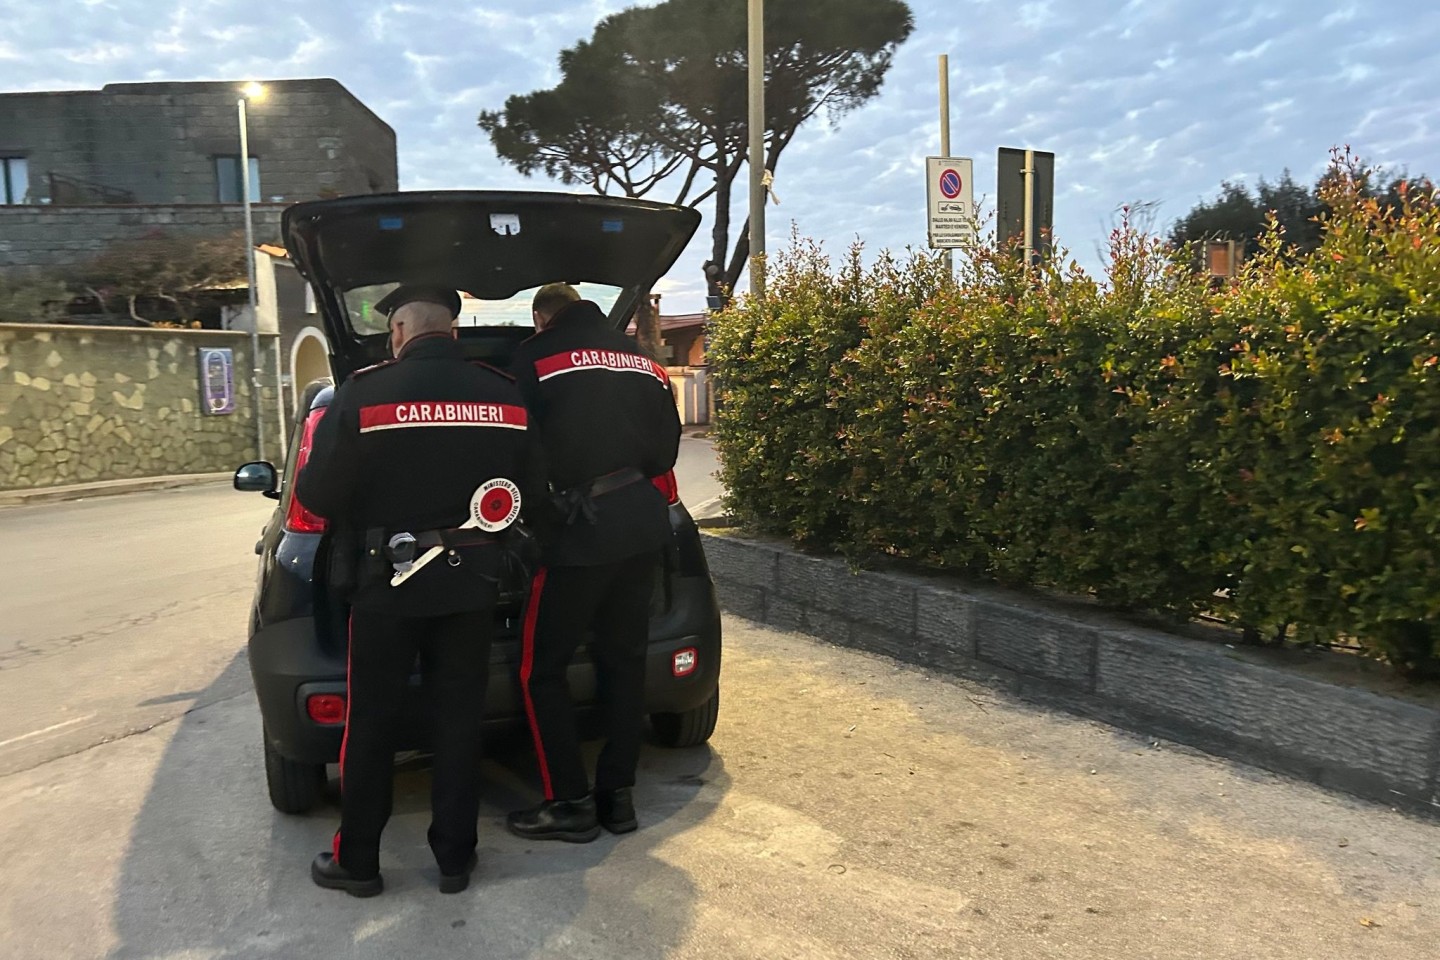 Nach einem Streit wird ein Mann in Italien laut Polizei von seinem Bruder enthauptet. Die Carabinieri ermitteln. (Archivbild)